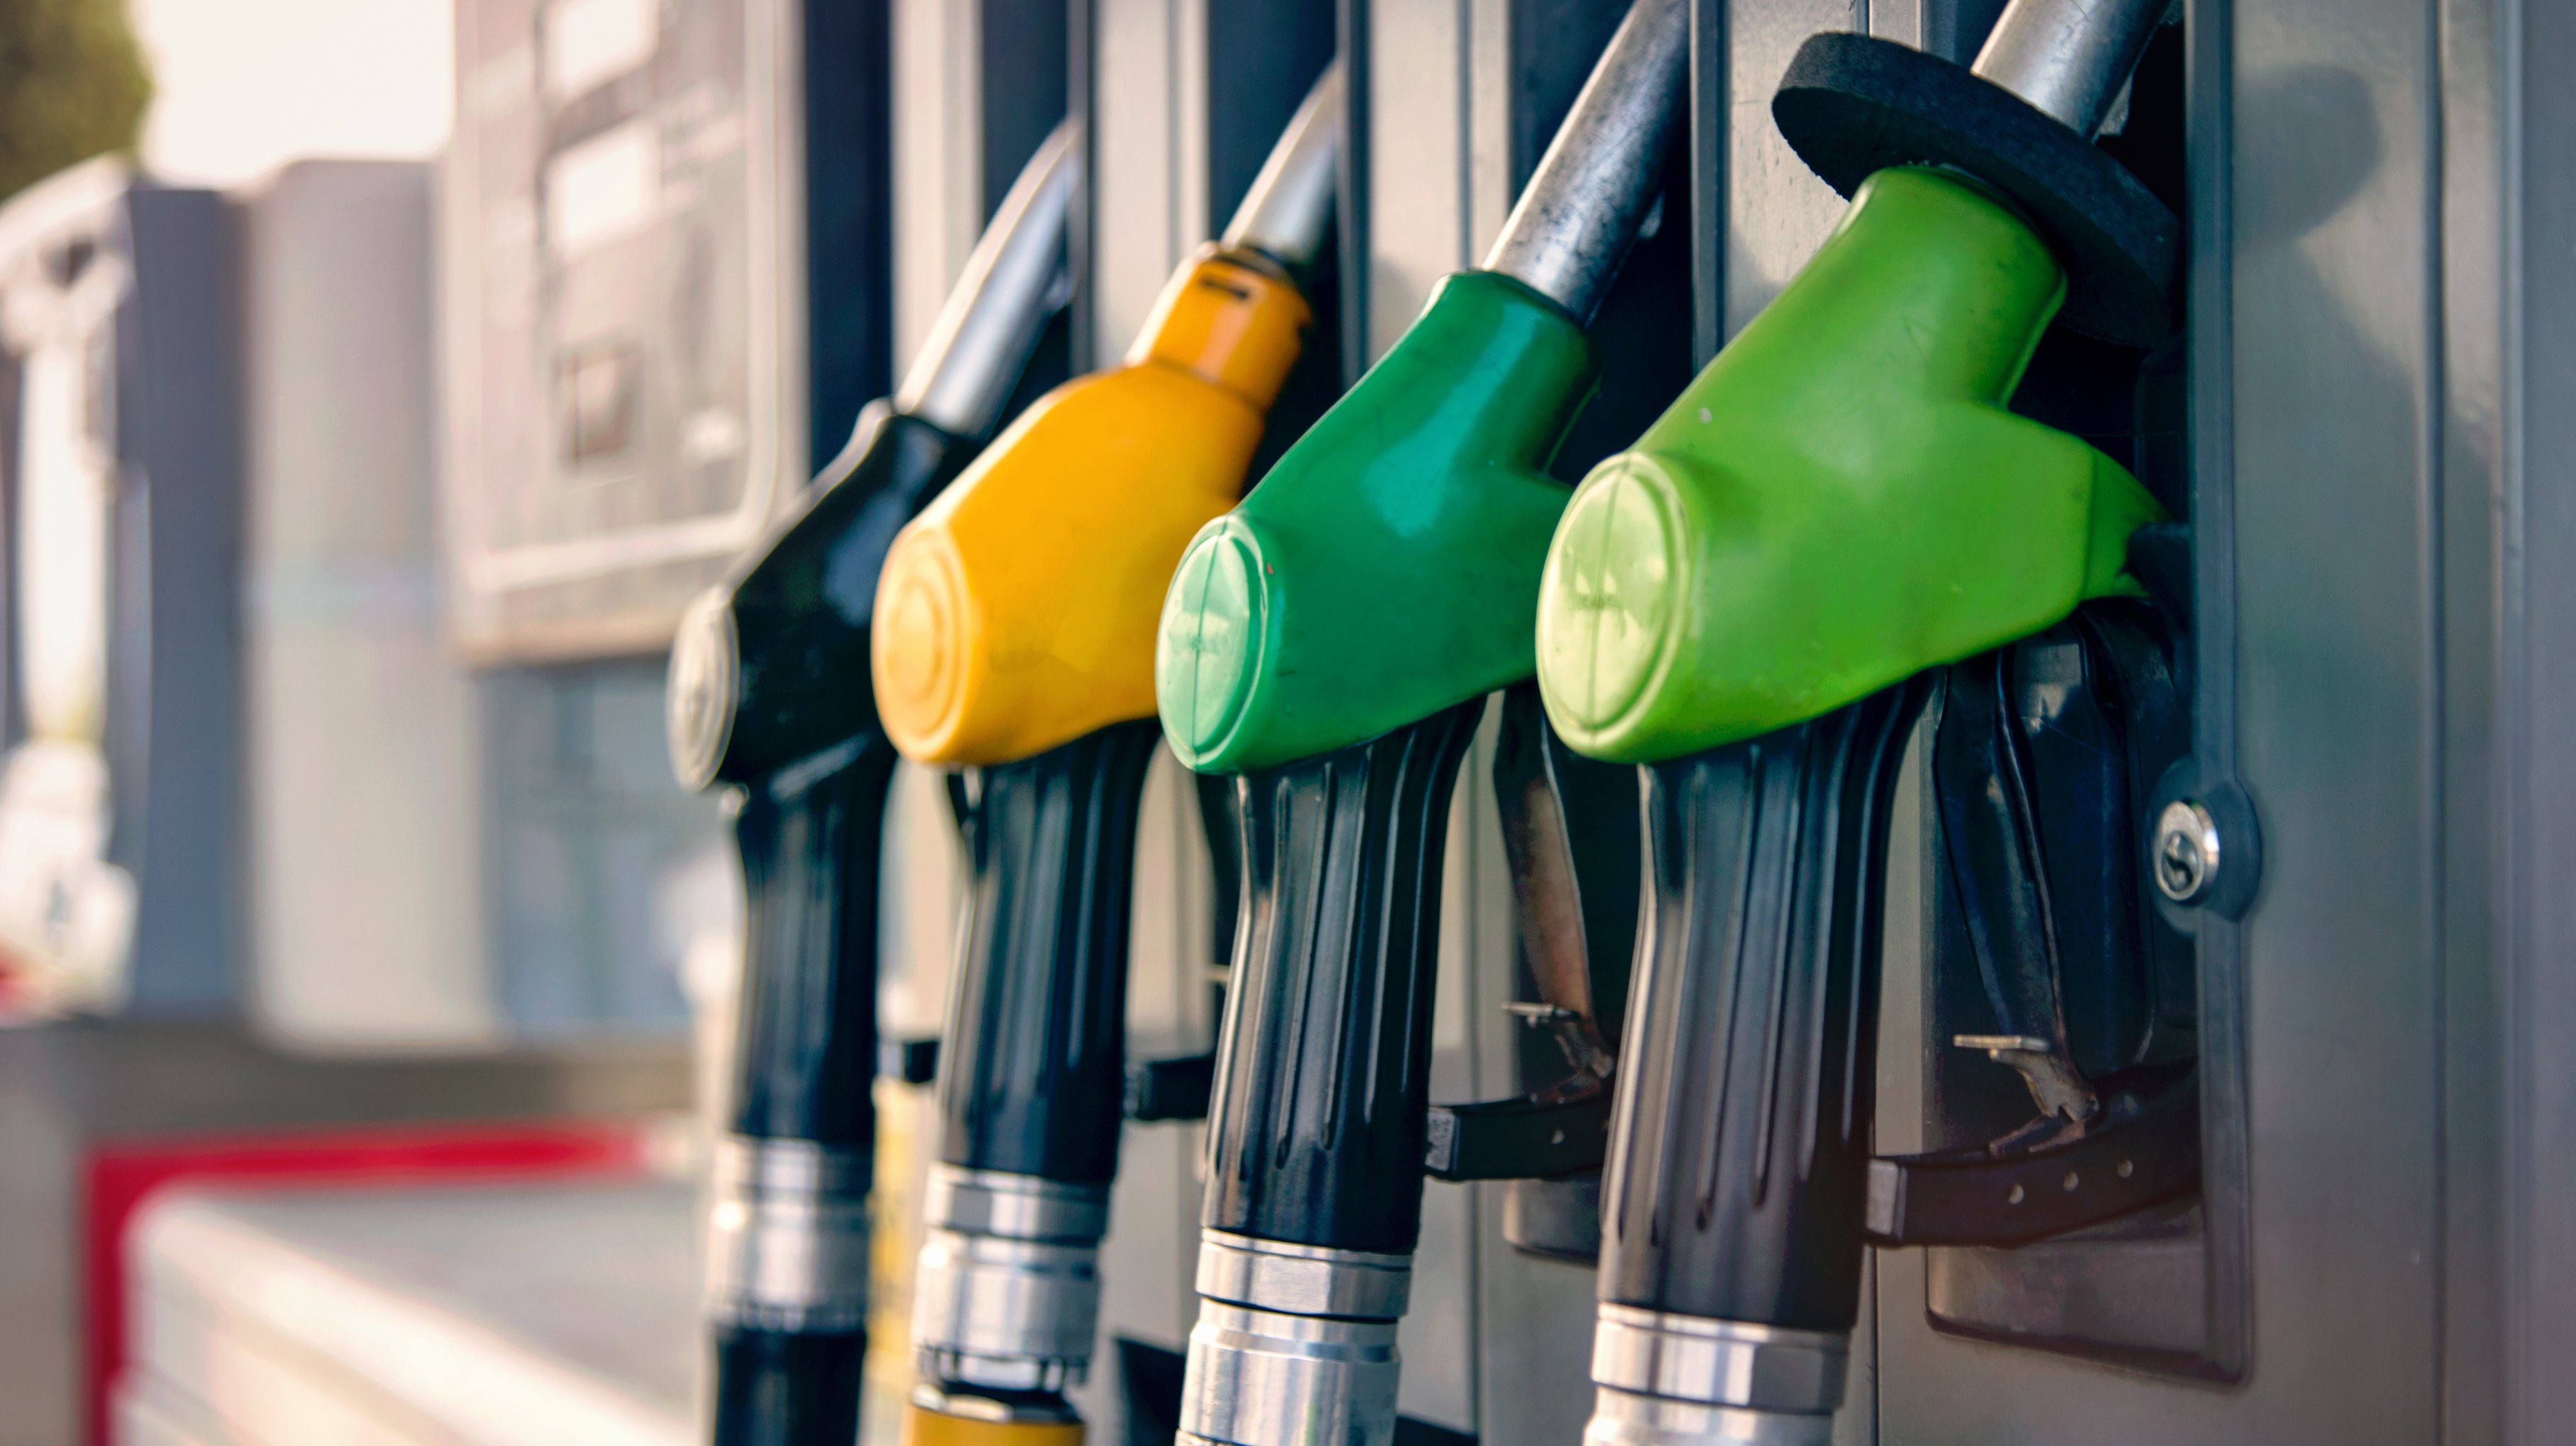 Preço médio semanal da ERSE subiu 0,2% para a gasolina e desceu 1,2% para o gasóleo